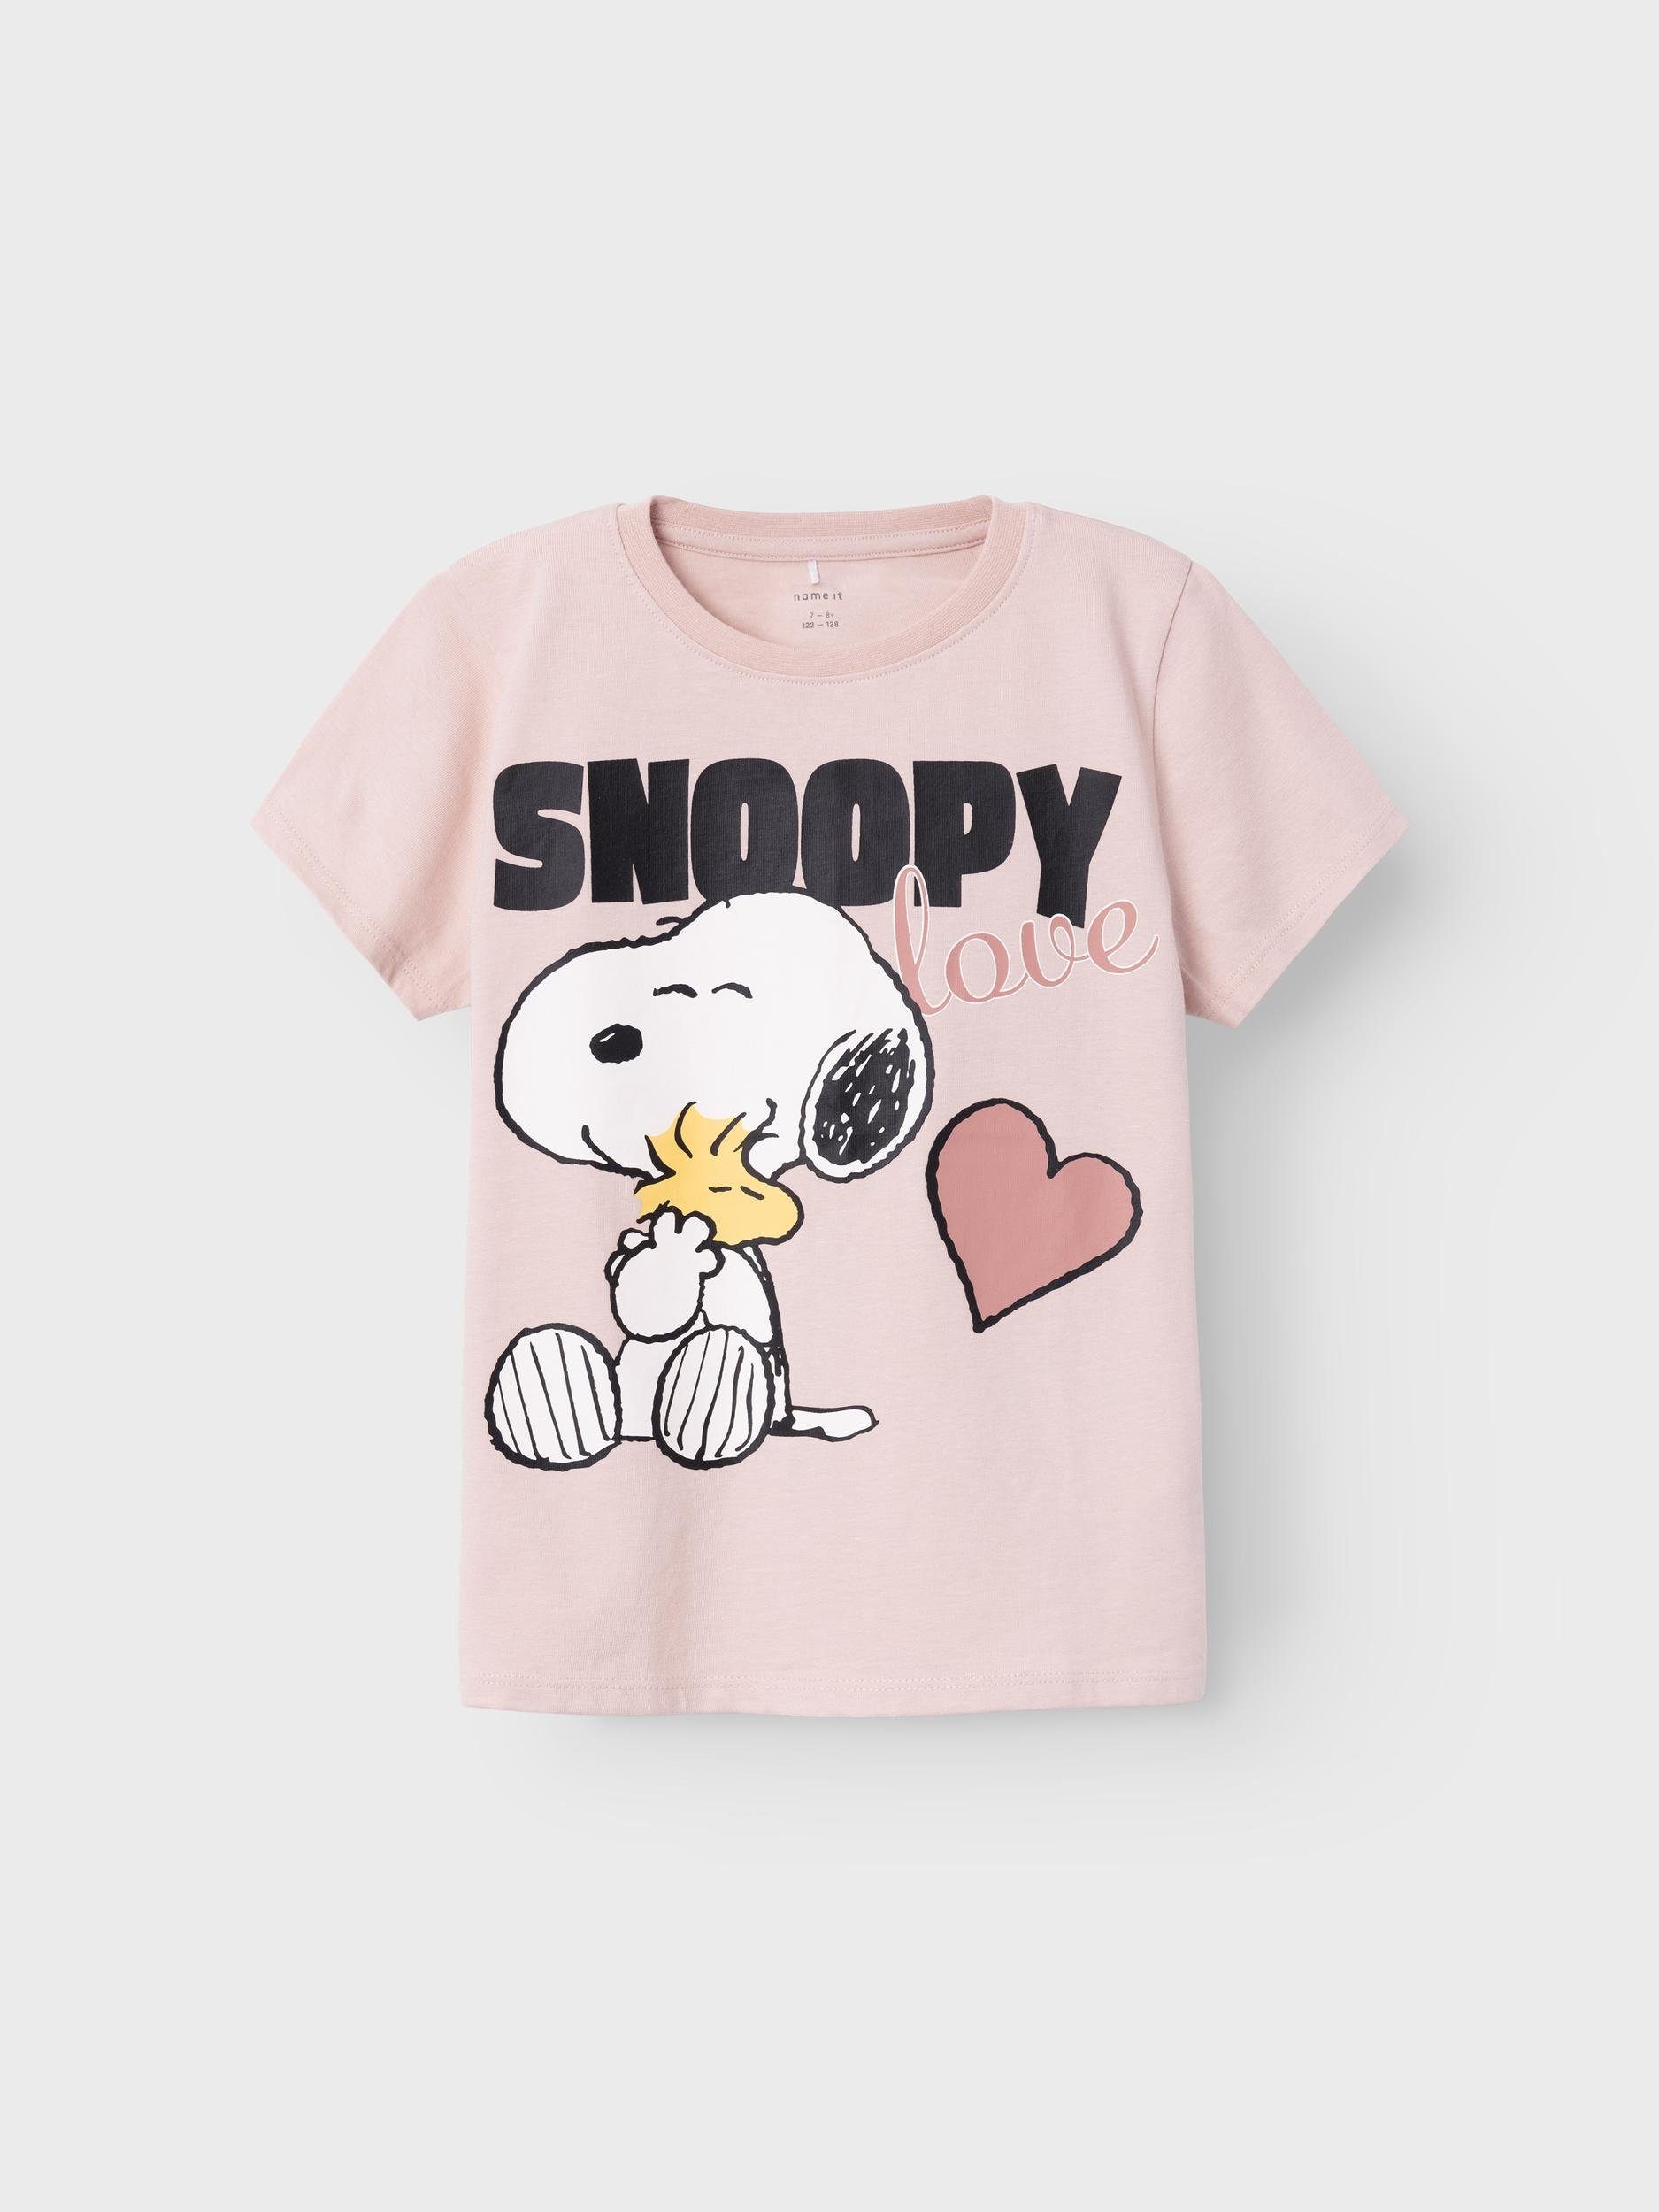 It SNOOPY TOP T-Shirt Name VDE NKFNANNI NOOS SS